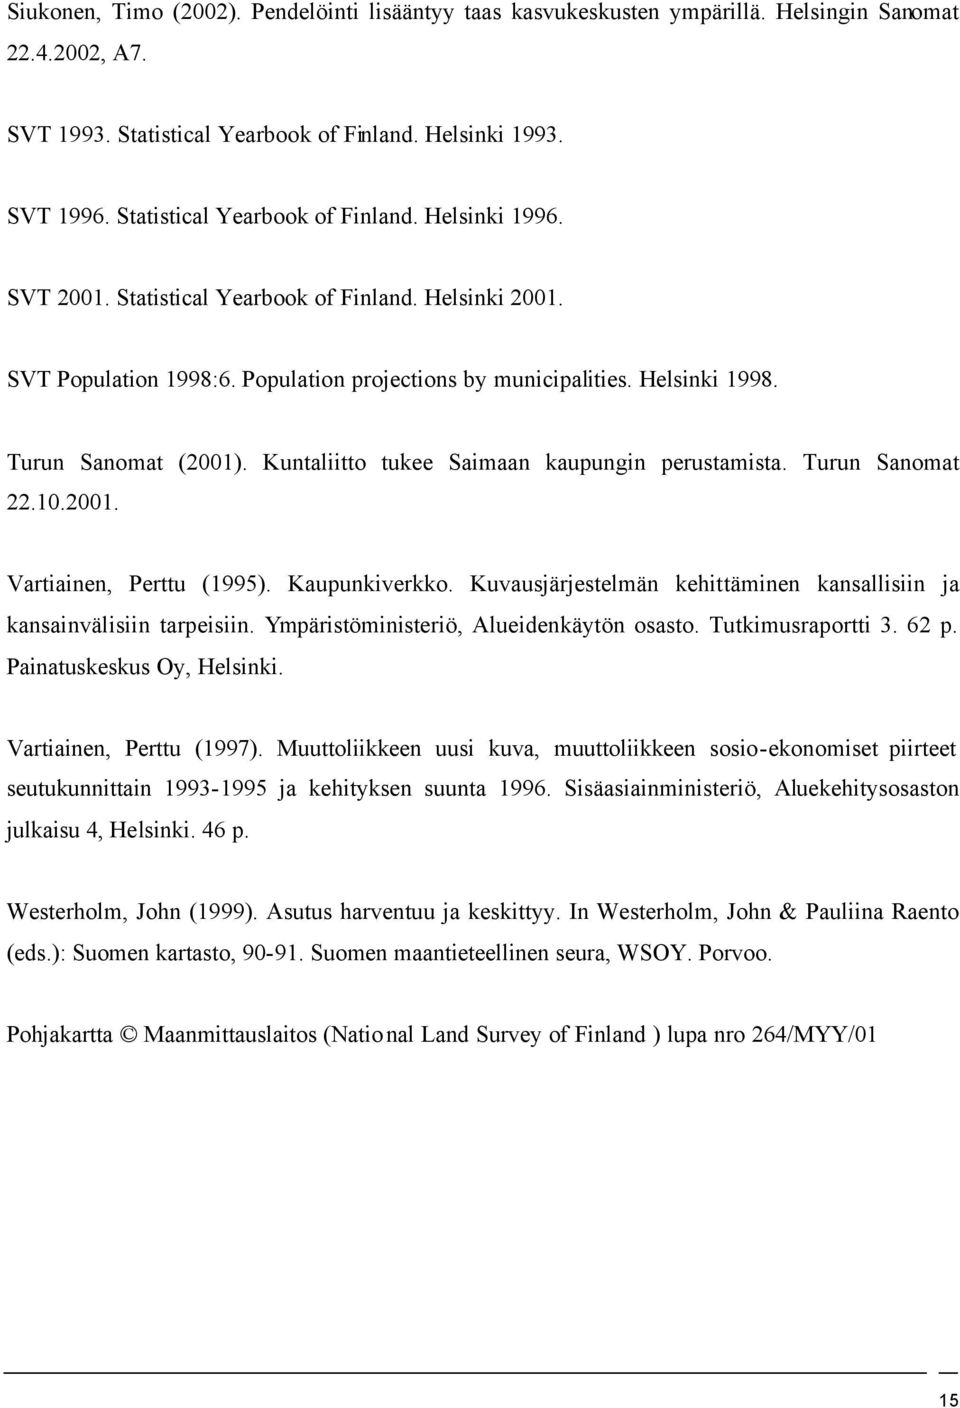 10.2001. Vartiainen, Perttu (1995). Kaupunkiverkko. Kuvausjärjestelmän kehittäminen kansallisiin ja kansainvälisiin tarpeisiin. Ympäristöministeriö, Alueidenkäytön osasto. Tutkimusraportti 3. 62 p.